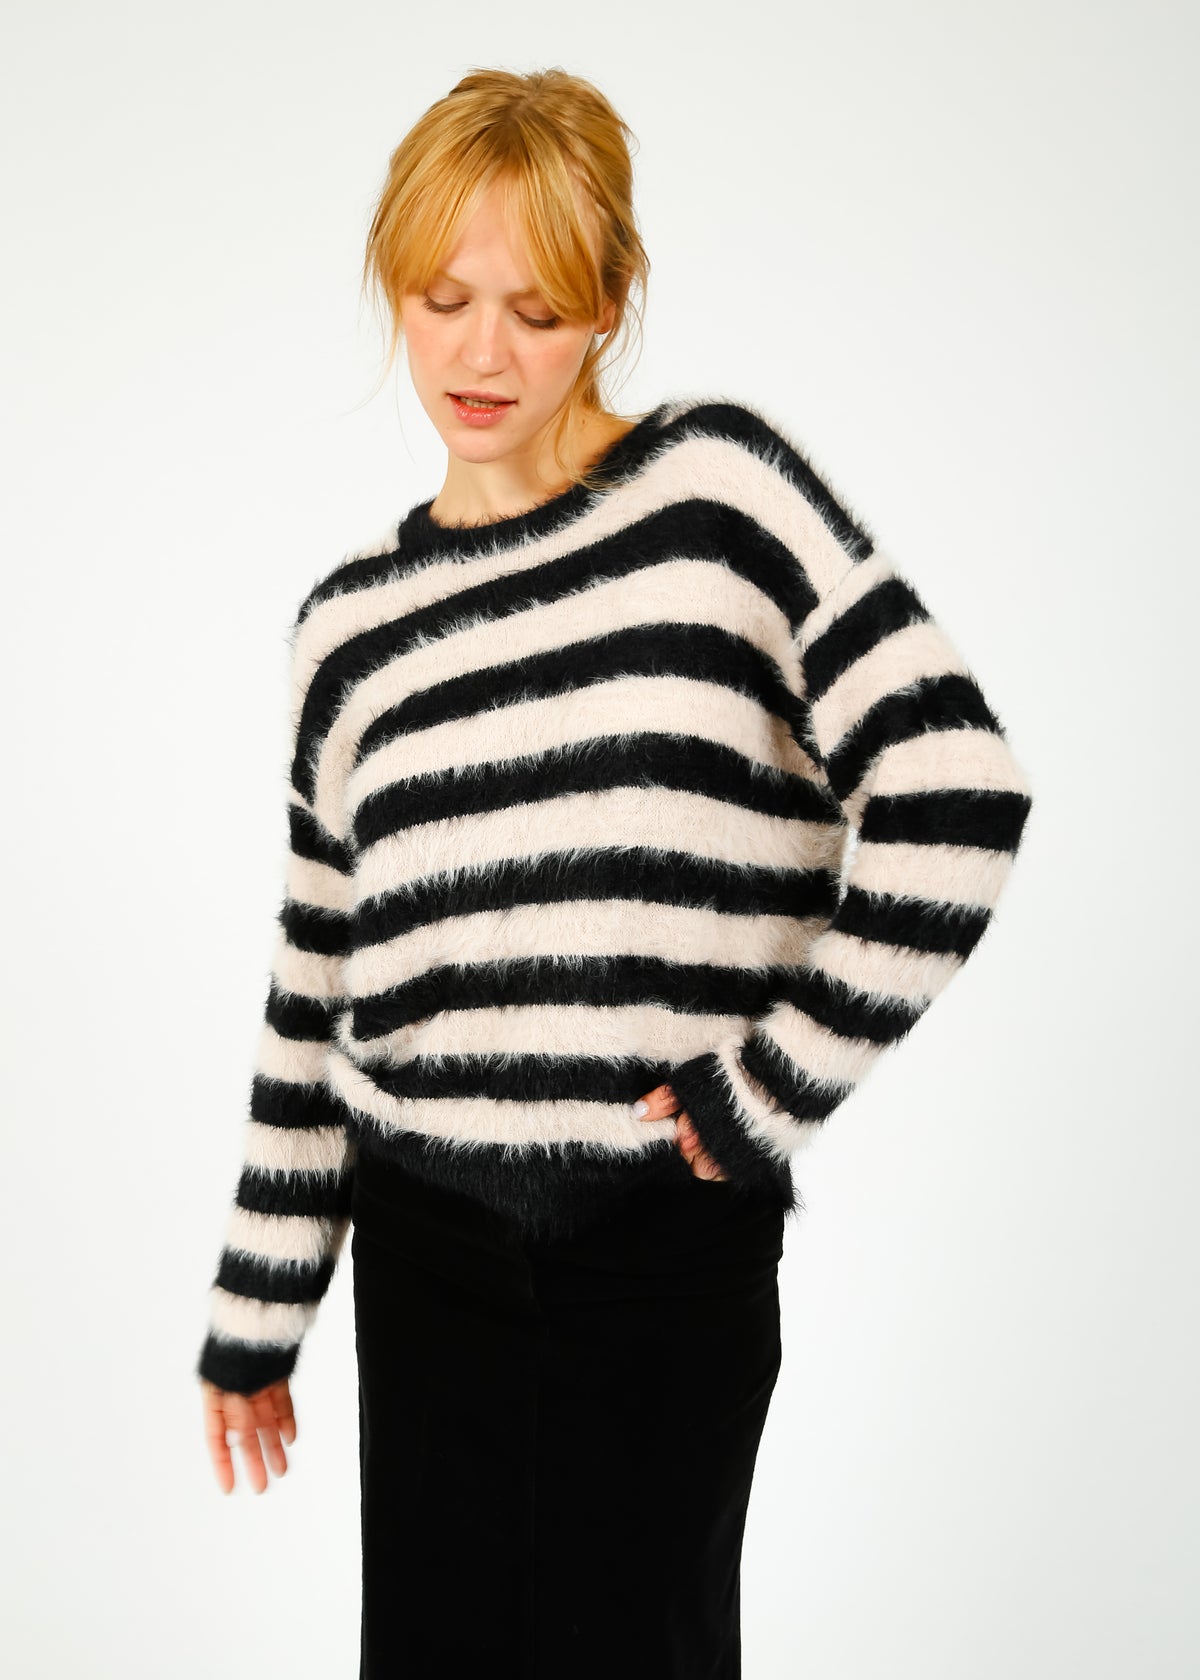 VELVET Kimberly Stripe Knit in Black, Blush